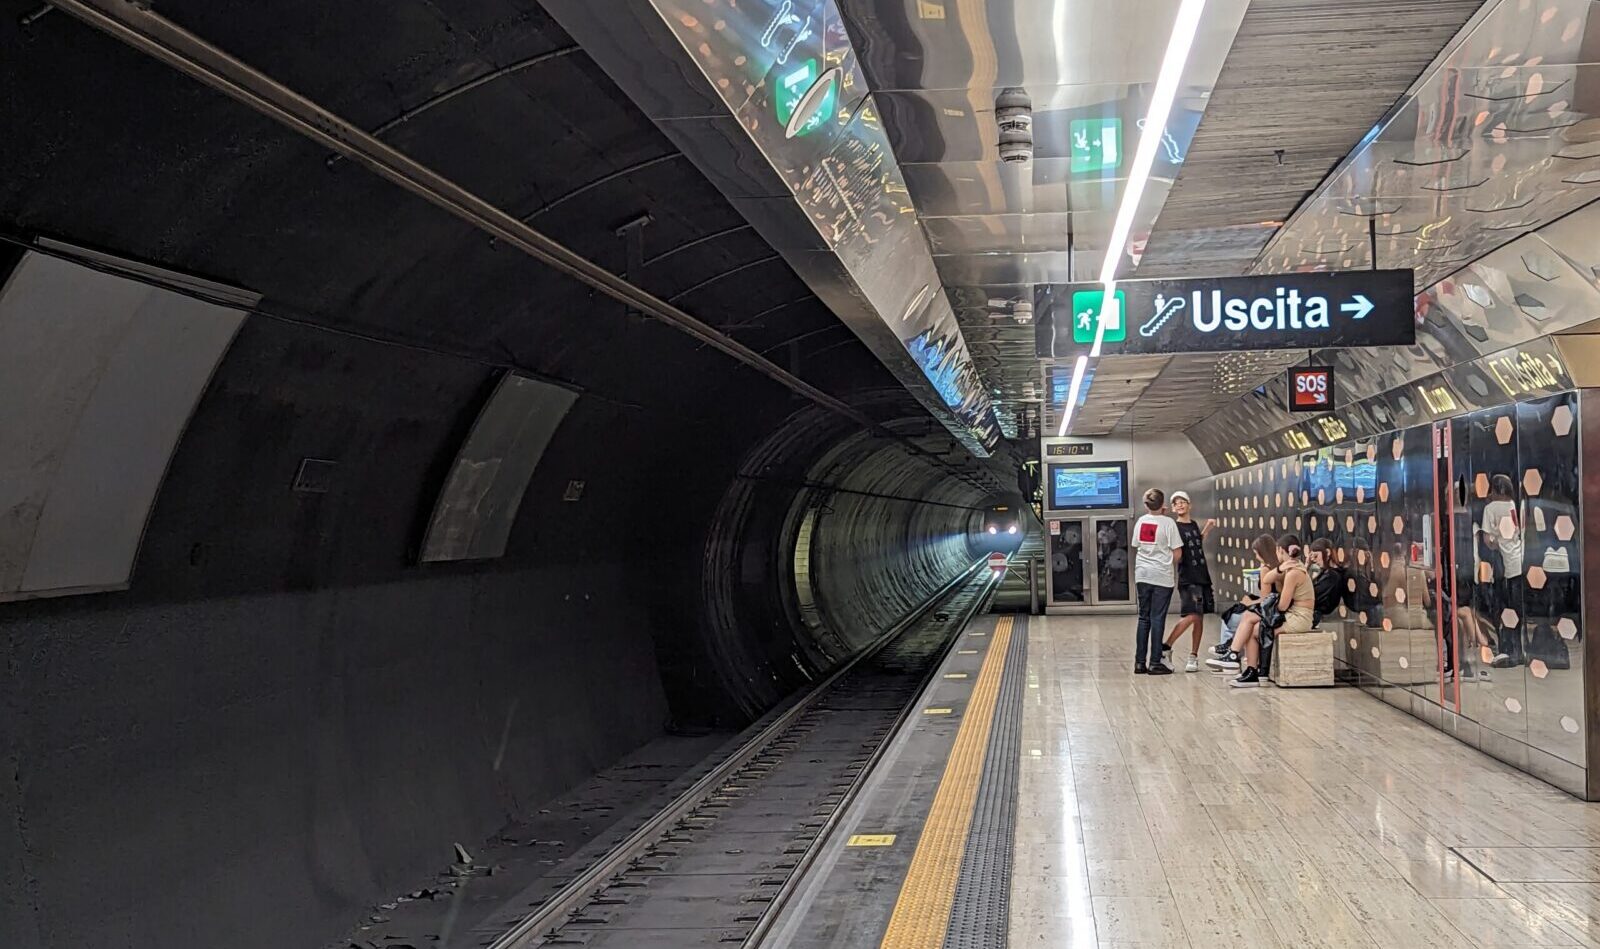 ナポリ地下鉄 1 号線、ムニチピオ駅